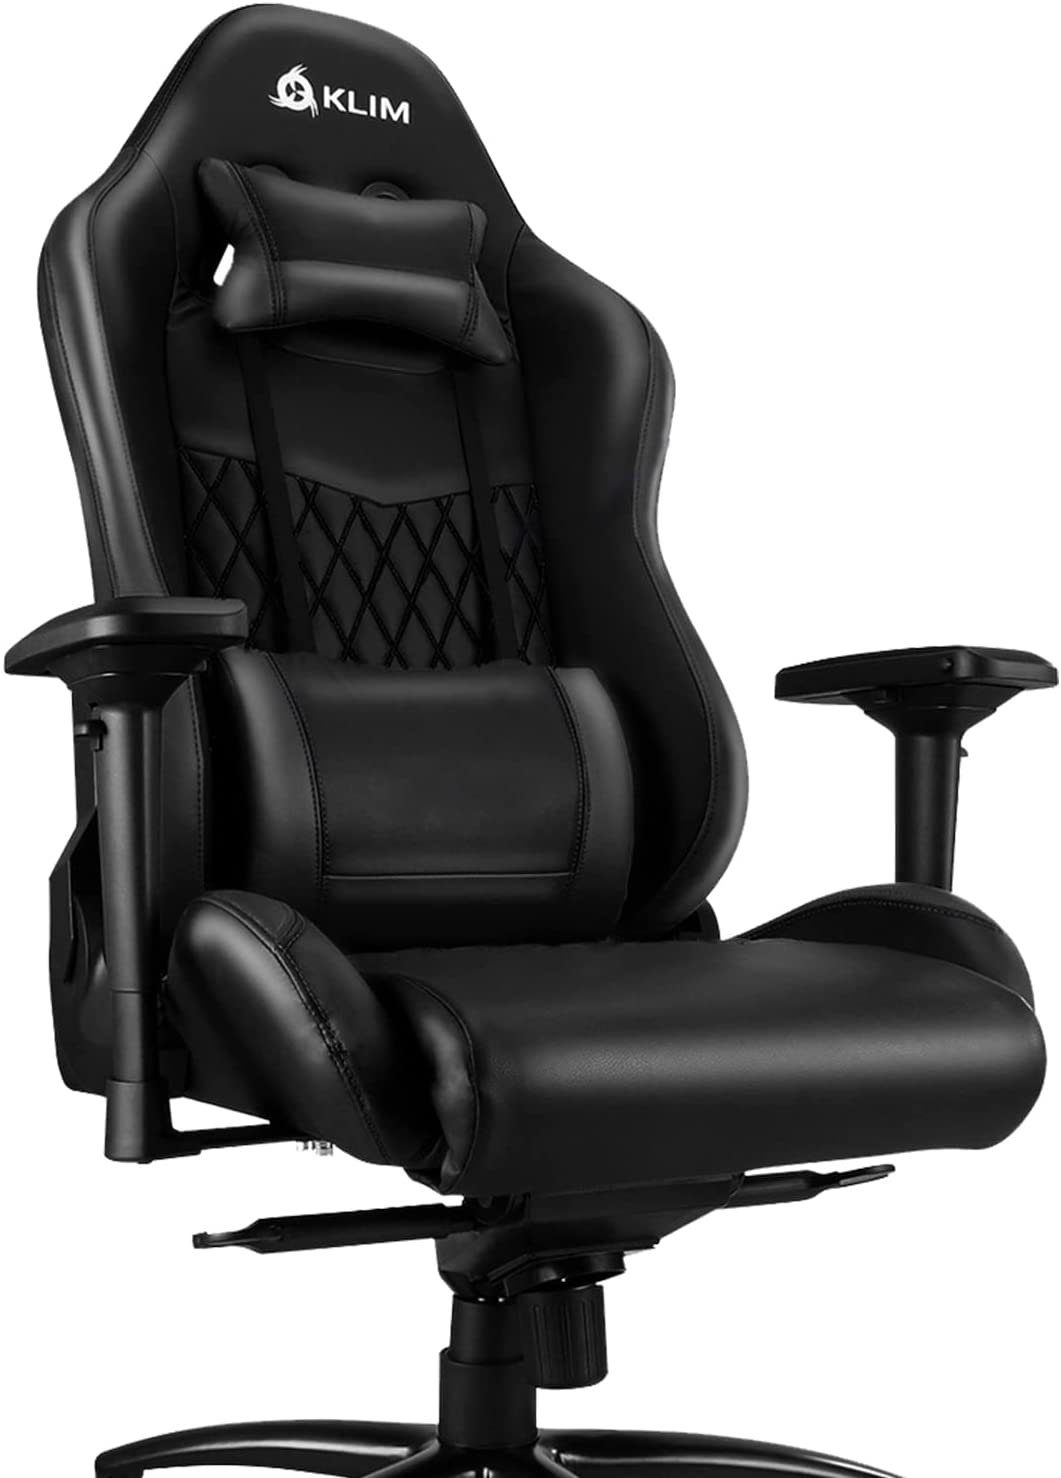 Schwarz fürs Gaming  Ergonomischer Arbeitszimmer Stuhl, Qualität, Stuhl, Gaming Chair Stuhl KLIM Hochwertige Stylischer Esports